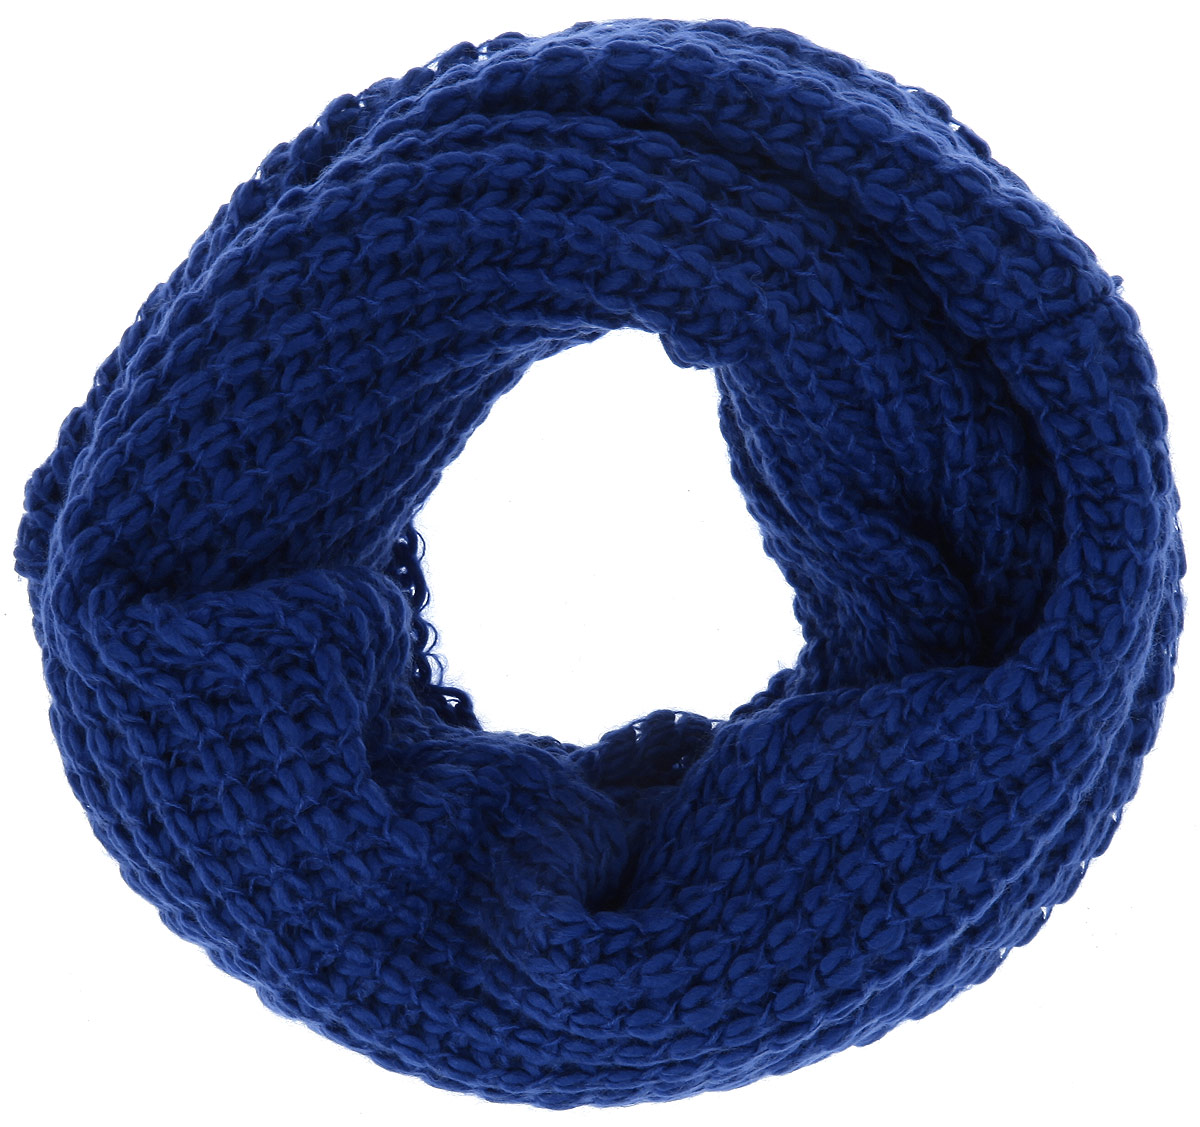 Снуд-хомут женский Venera, цвет: синий. 9302303-11. Размер универсальный